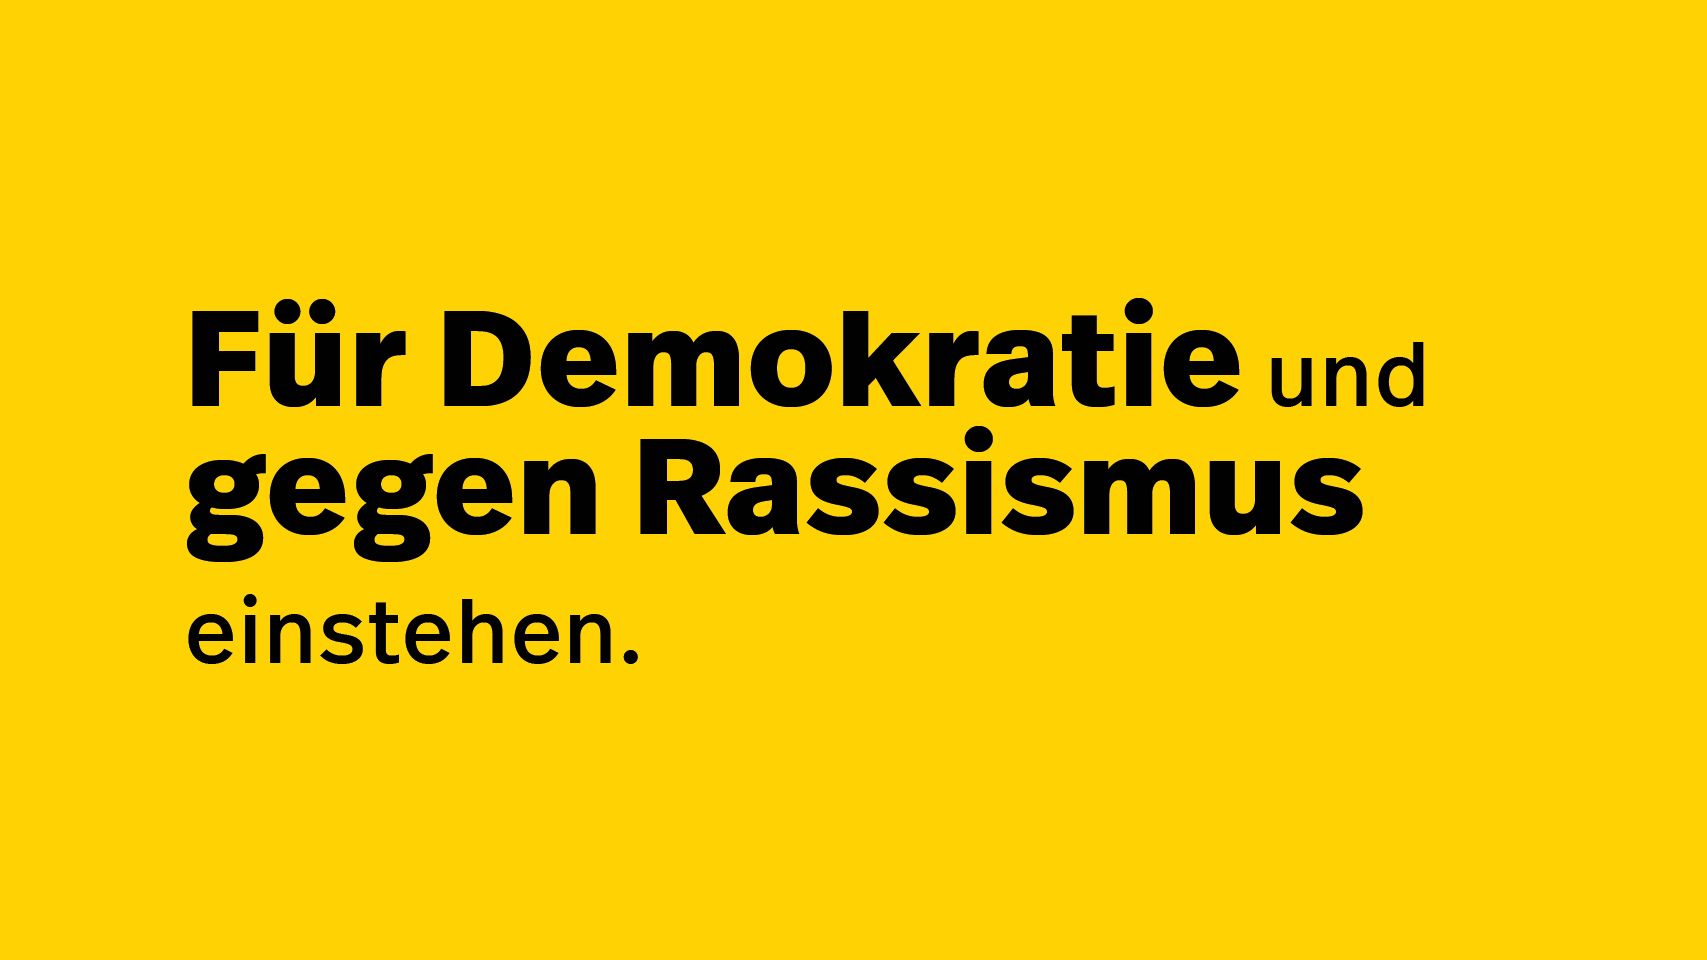 Banner mit einem Statement für Demokratie und gegen Rassismus (verweist auf: Für Demokratie und gegen Rassismus)